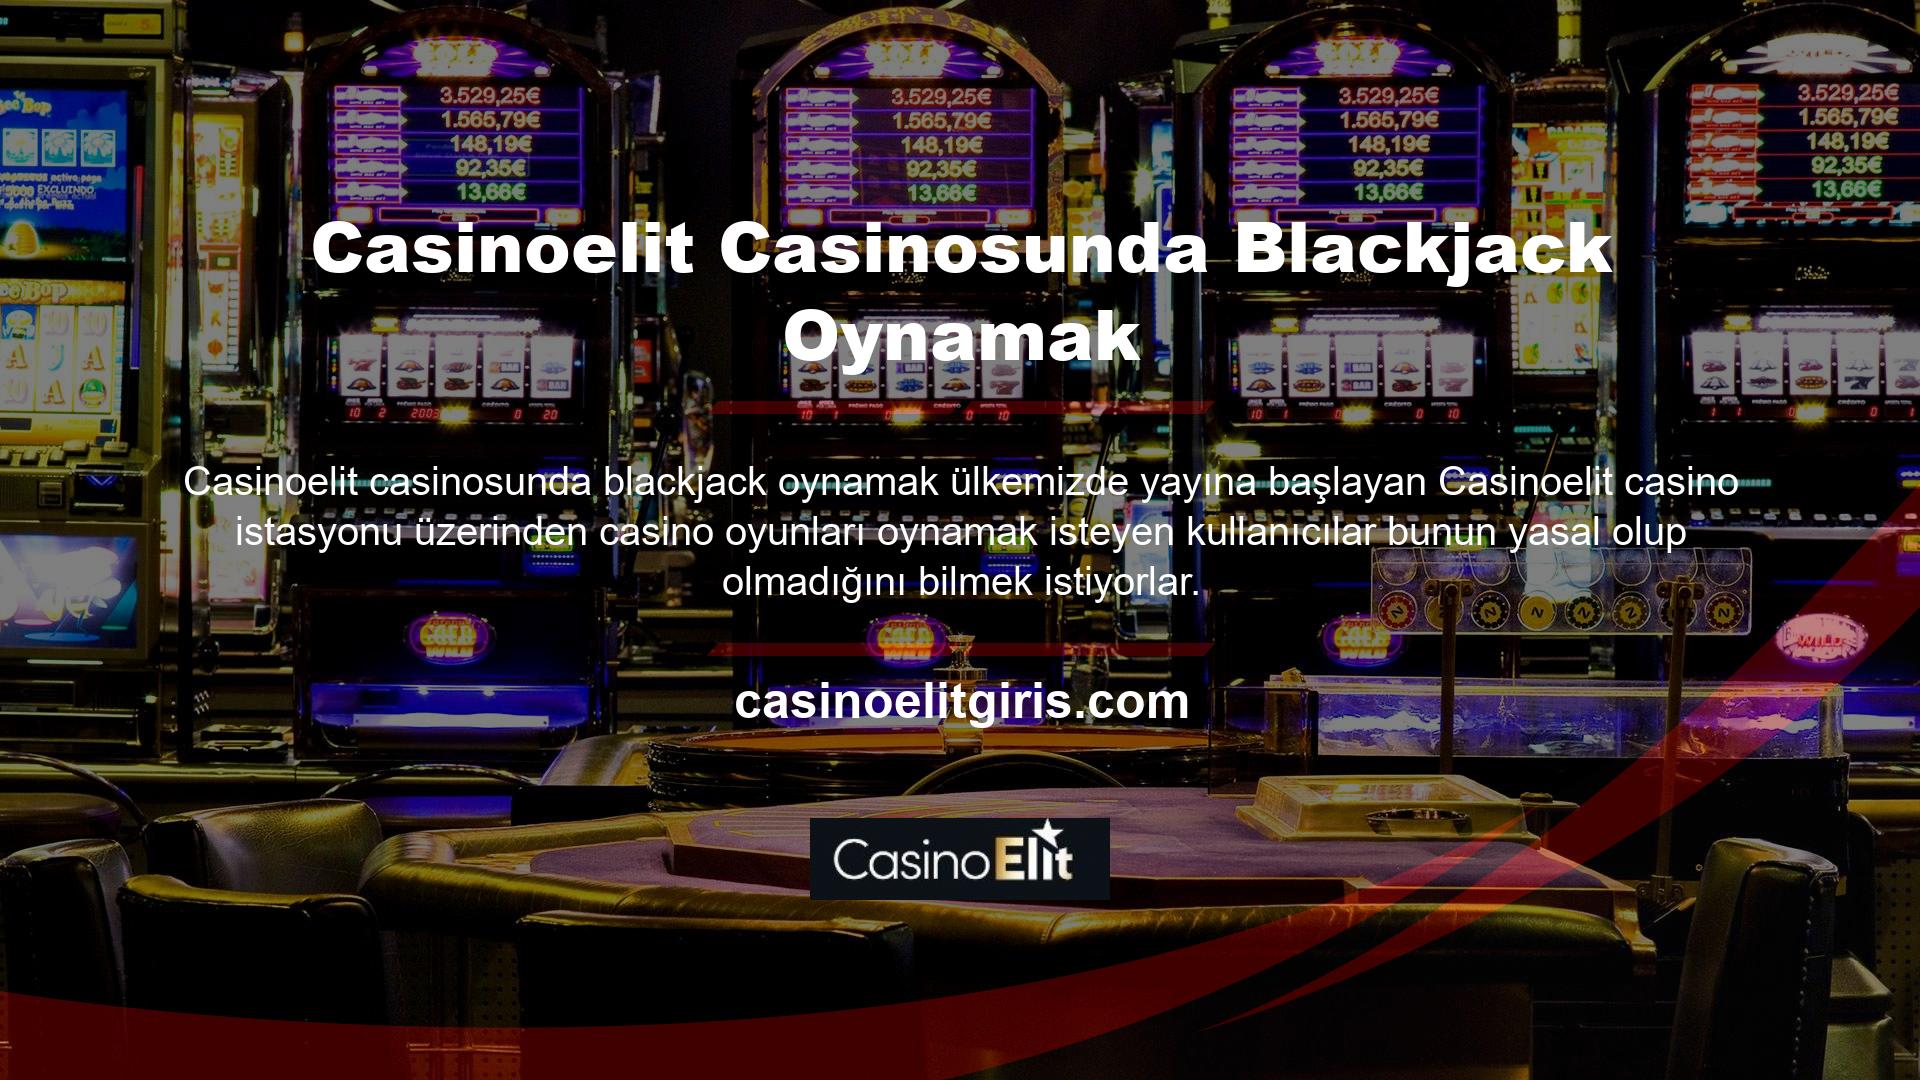 Özellikle Casinoelit blackjack oynamayı öğrenen kullanıcılar, bu sitenin oyun oynarken kendilerine güvenilir bir platform sağlamasını beklemektedir